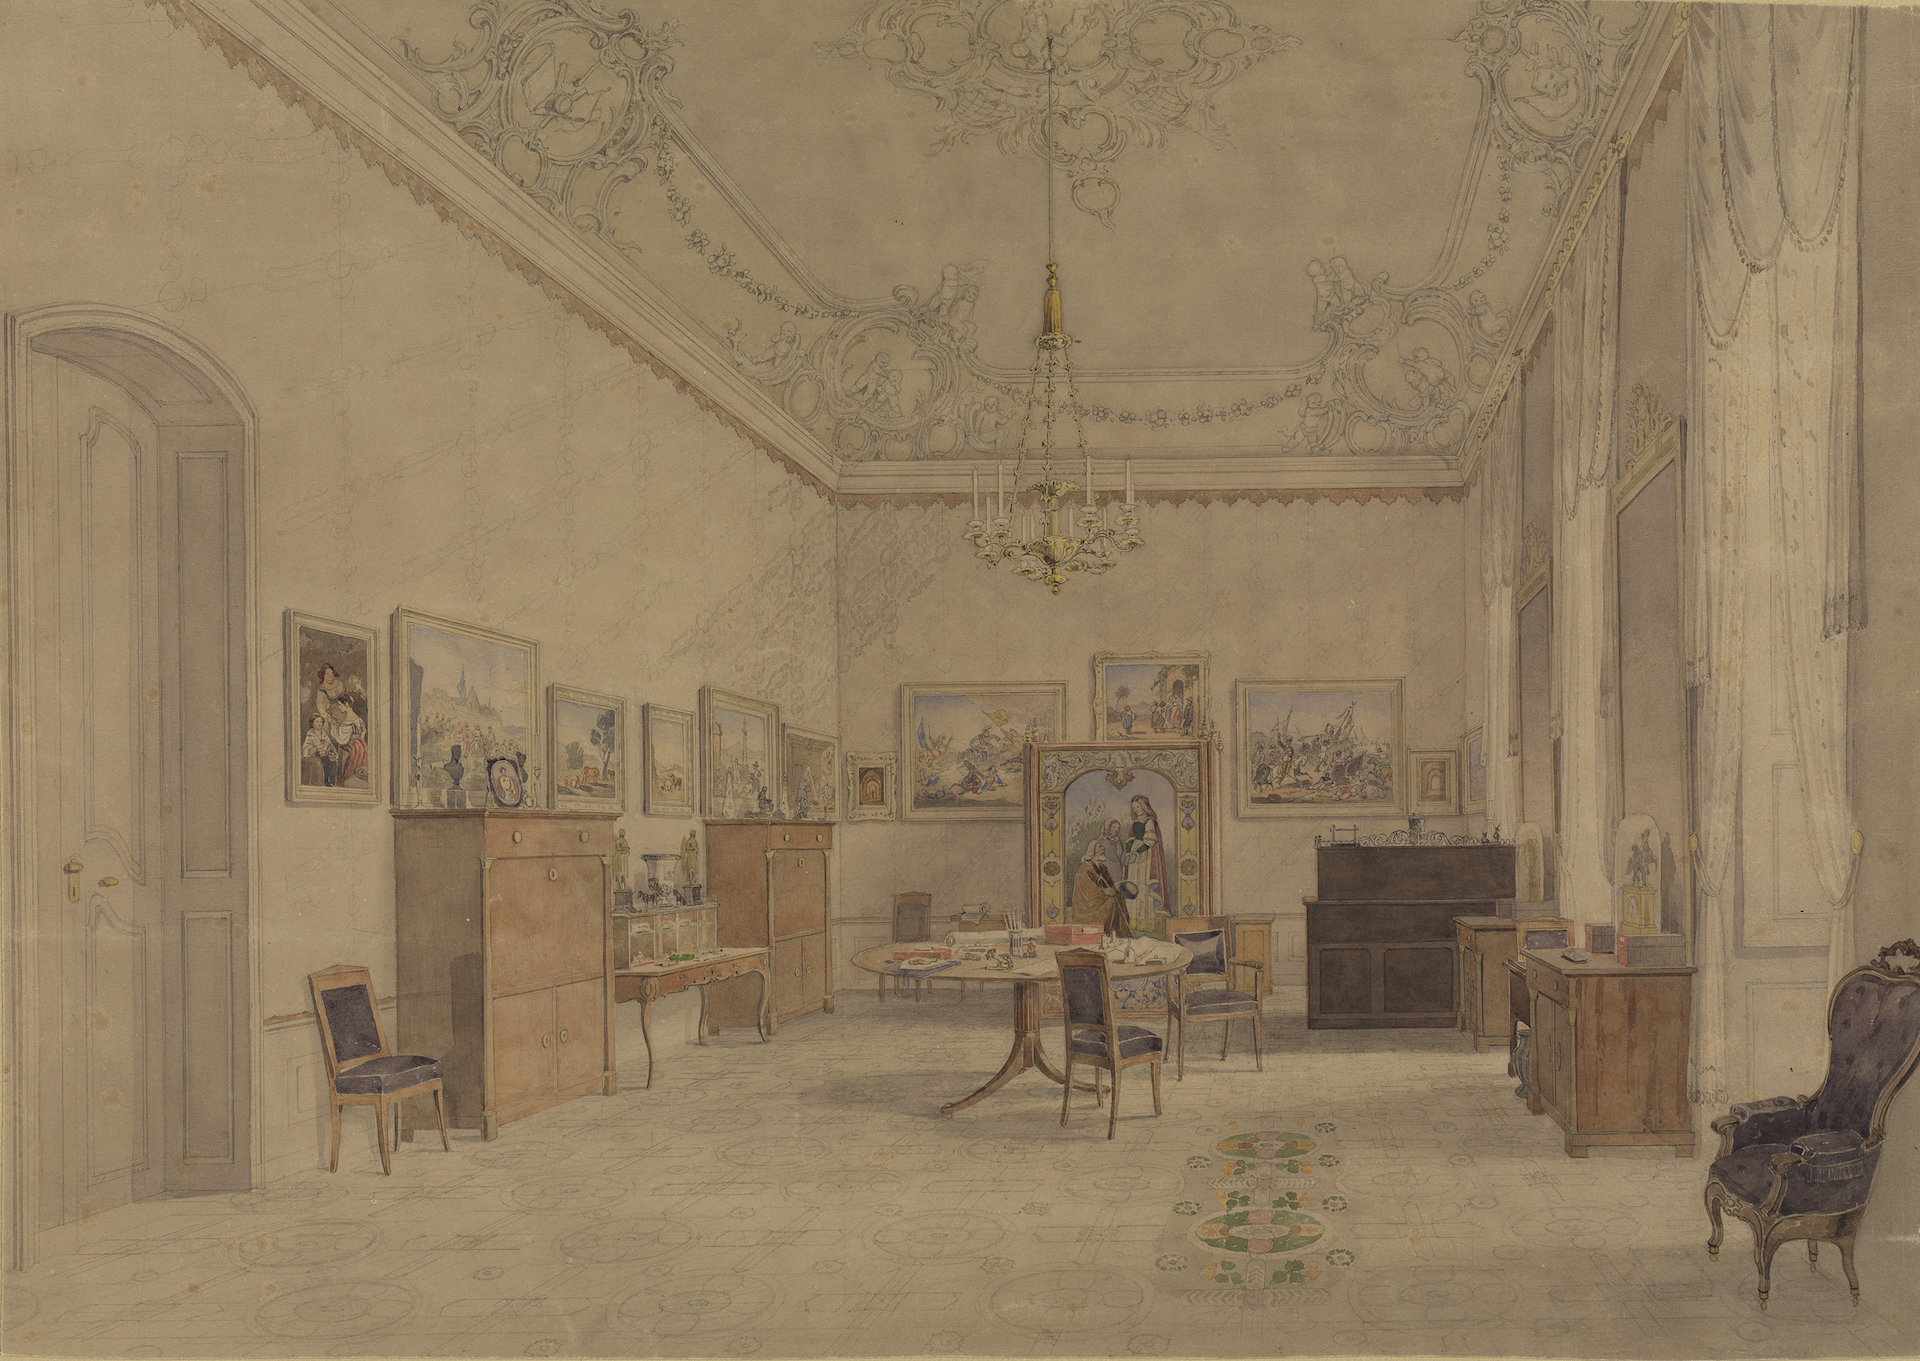 Abbildung der Zeichnung des Wohnzimmers Großherzog Leopolds von Louis Hoffmeister. Es zeigt den Innenraum eines Schlosses mit hohen Decken und Fenstern. Es stehen einige Möbel im Raum.